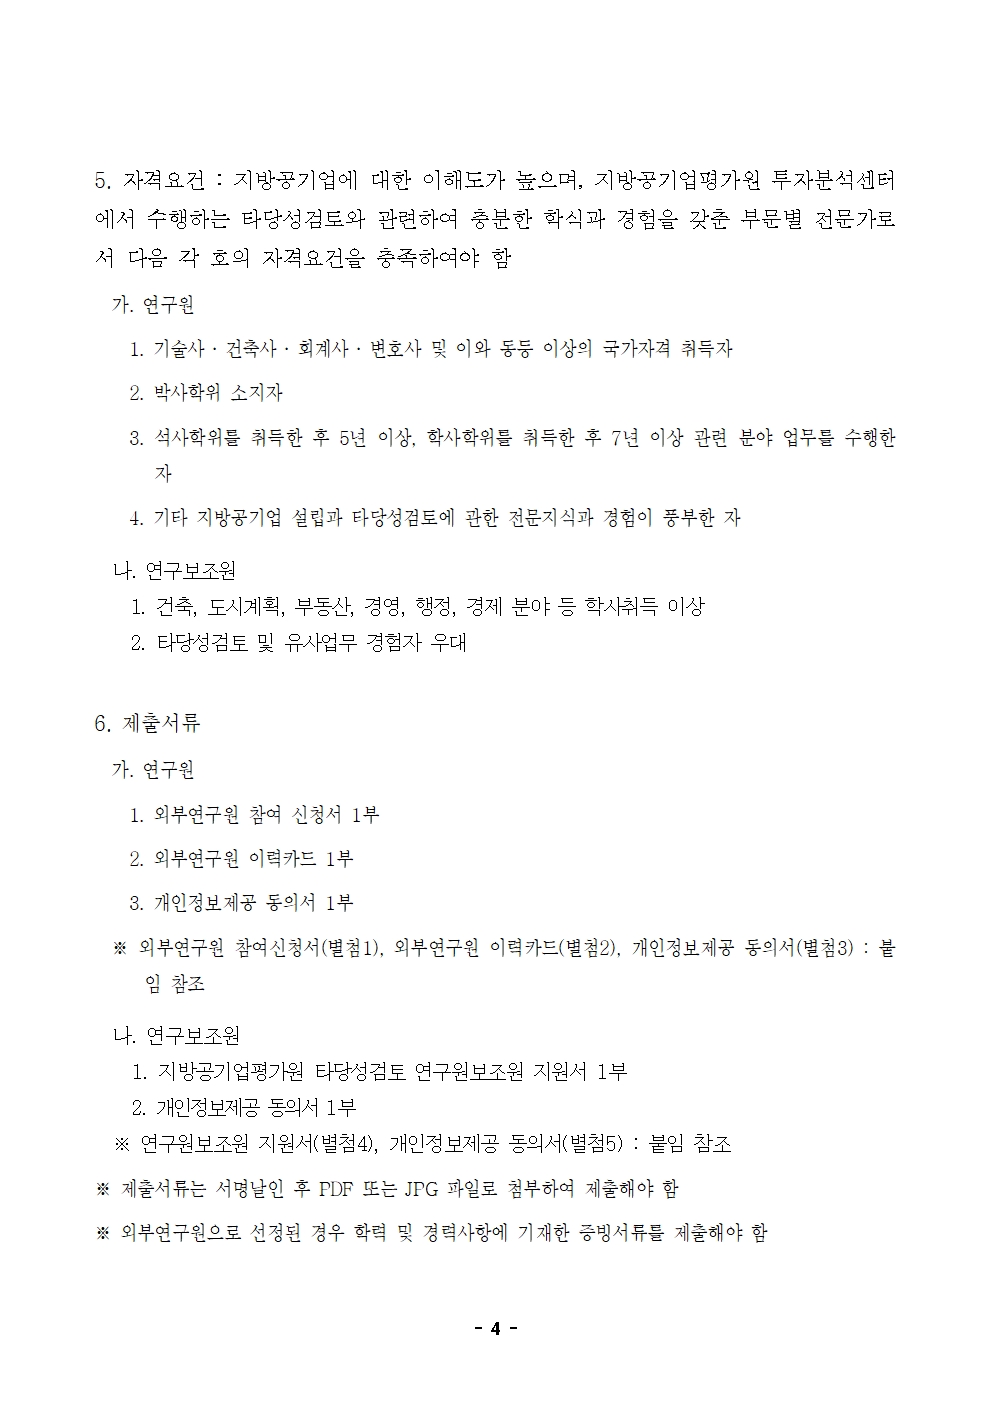 23-4차(5월) 외부연구원 모집 공고_최종 004